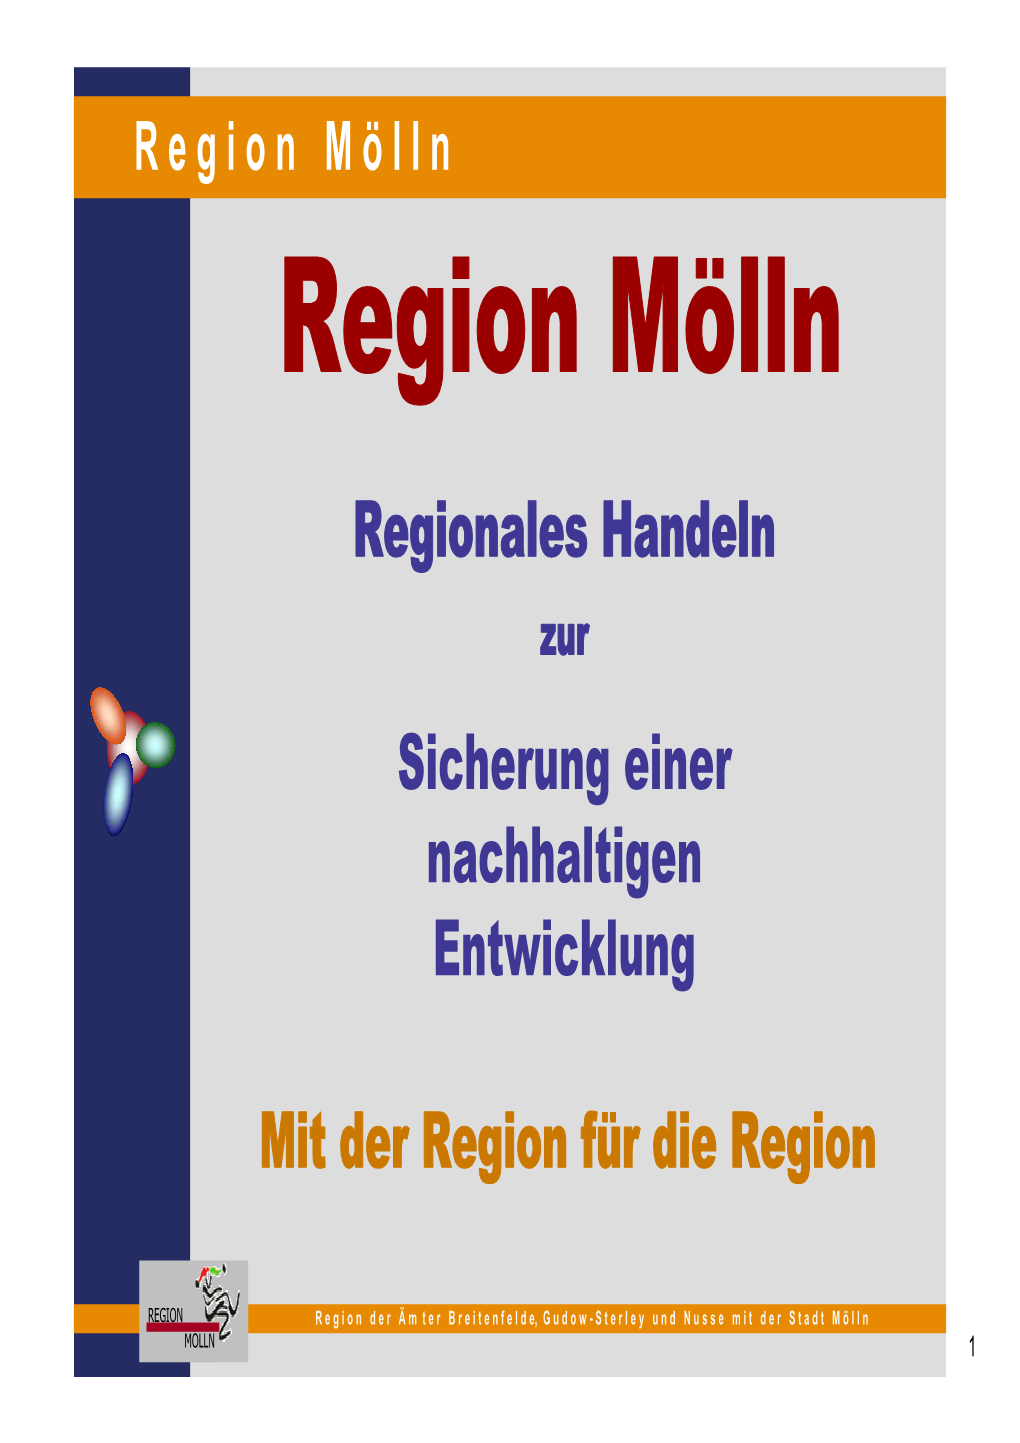 Region Mölln